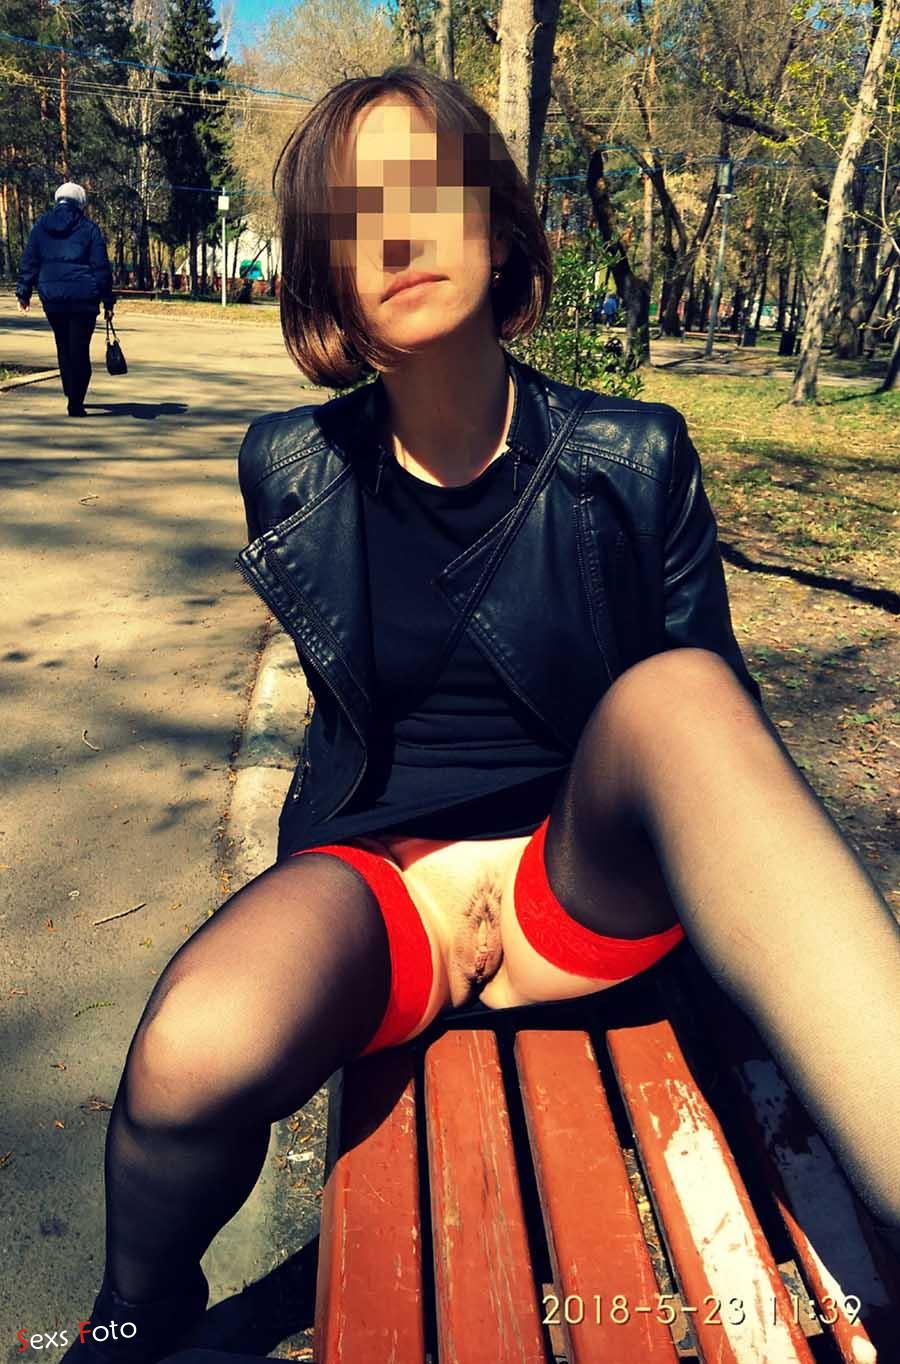 Светанула волосатой пиздой на скамейке в парке фото